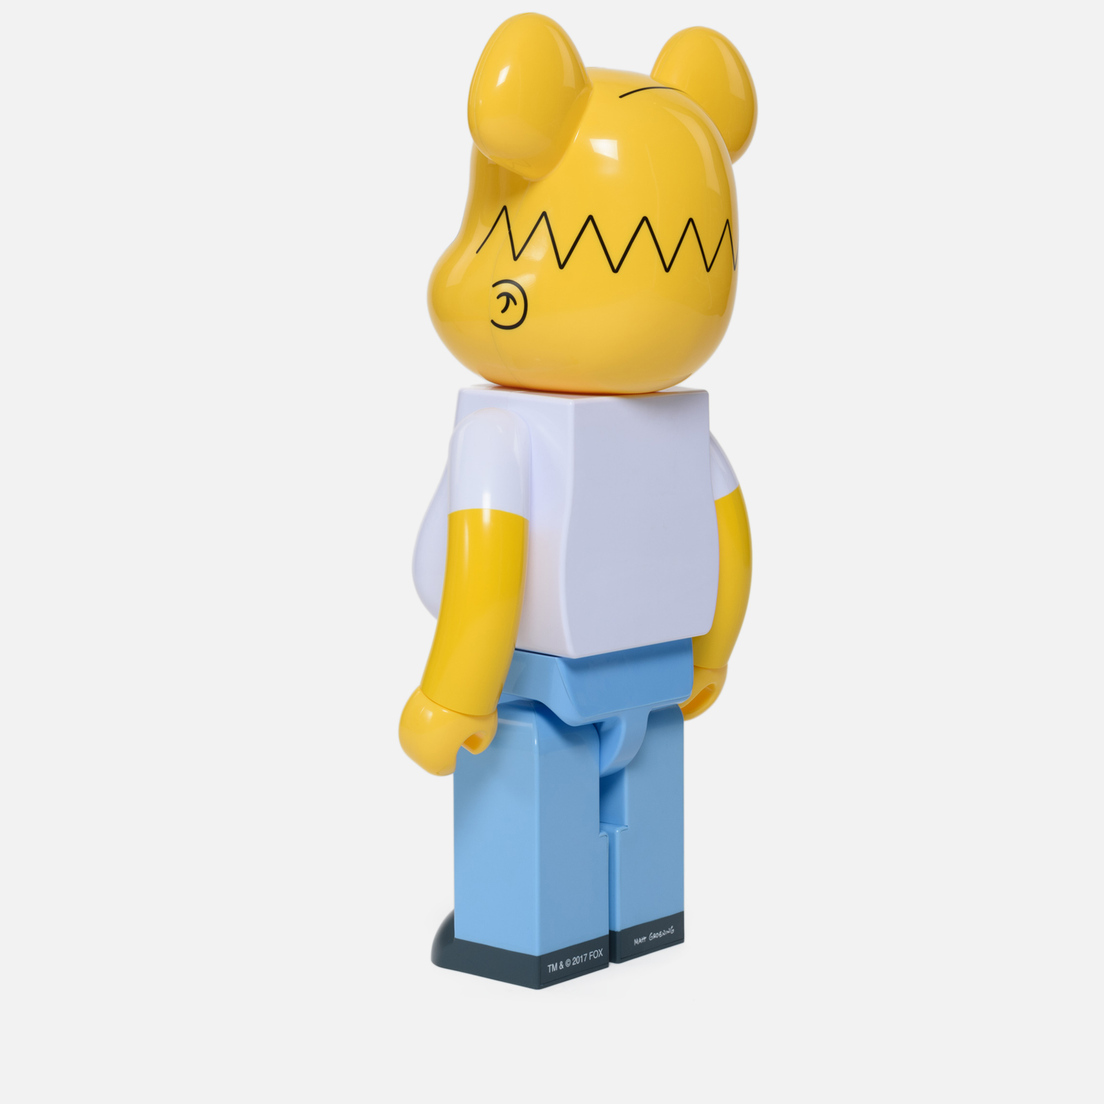 Medicom Toy Игрушка Bearbrick Homer Simpson 1000%